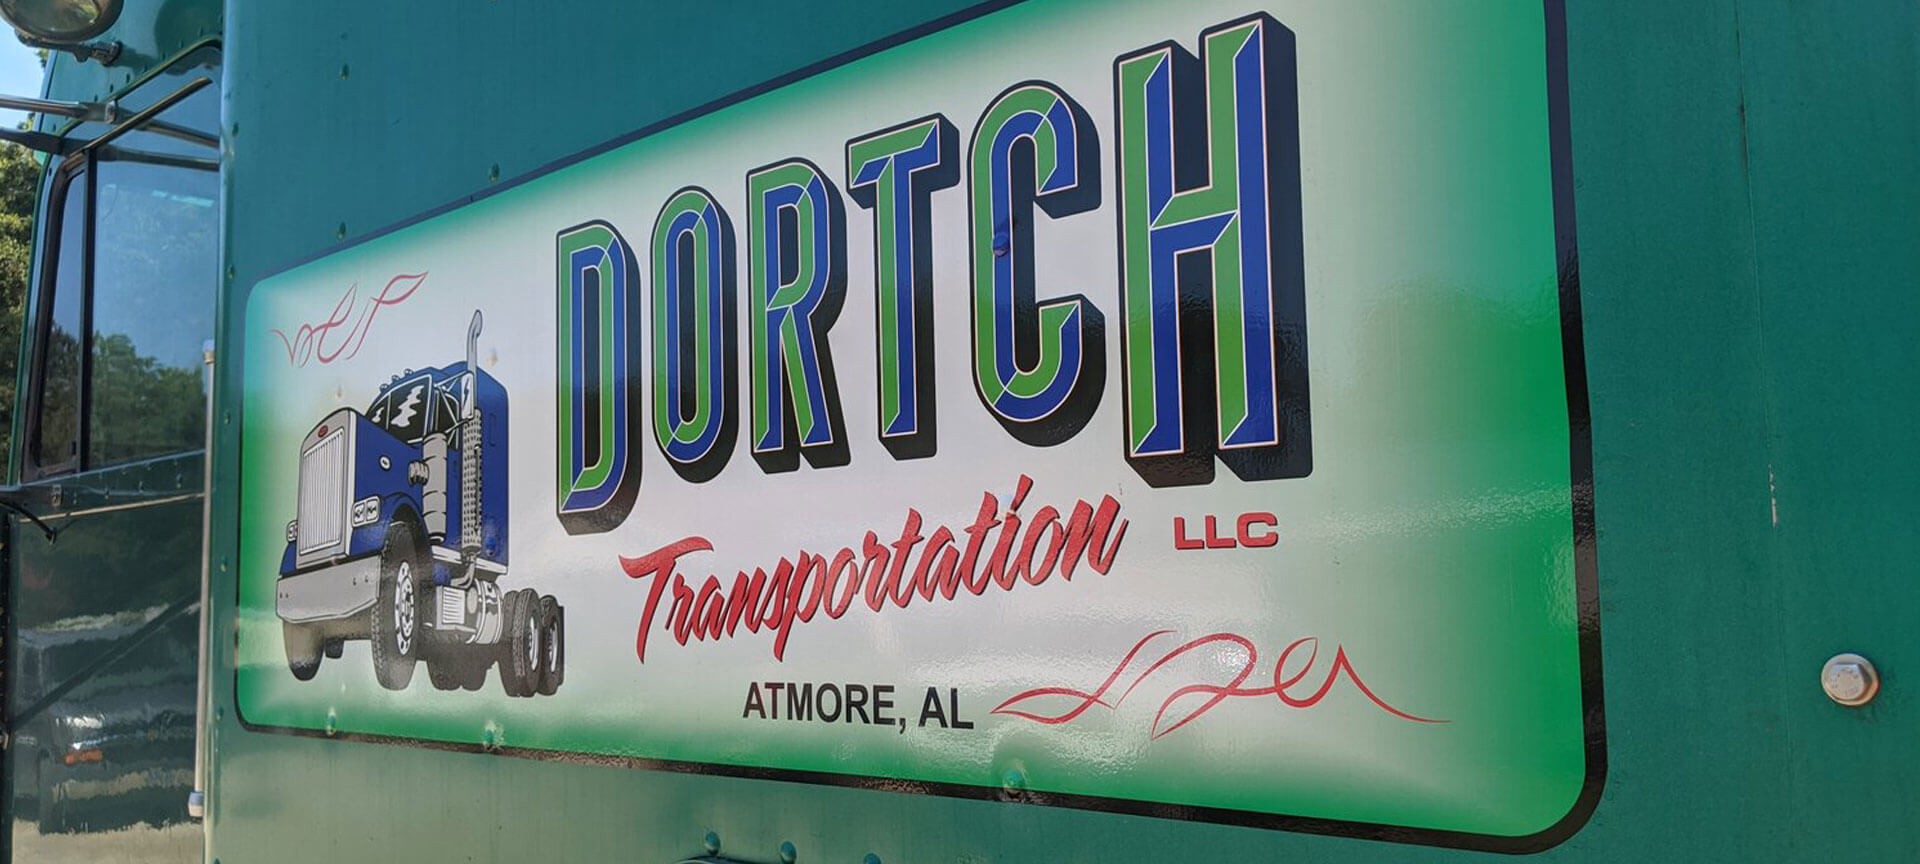 Dortch Transportation LLC Sign